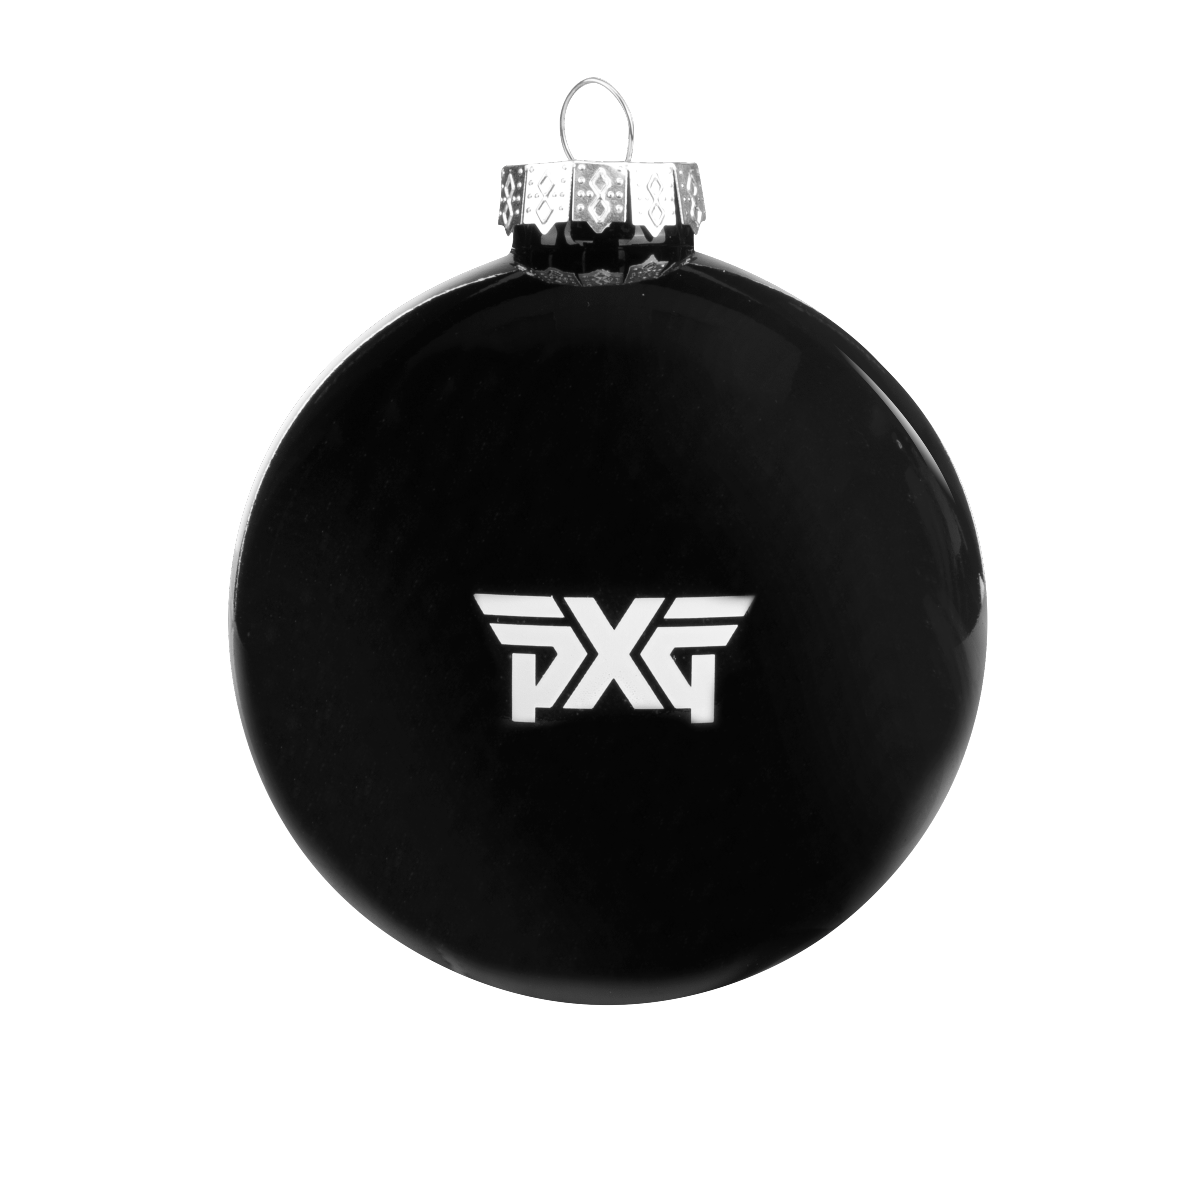 PXG-Ornament-Angle-1 (1)